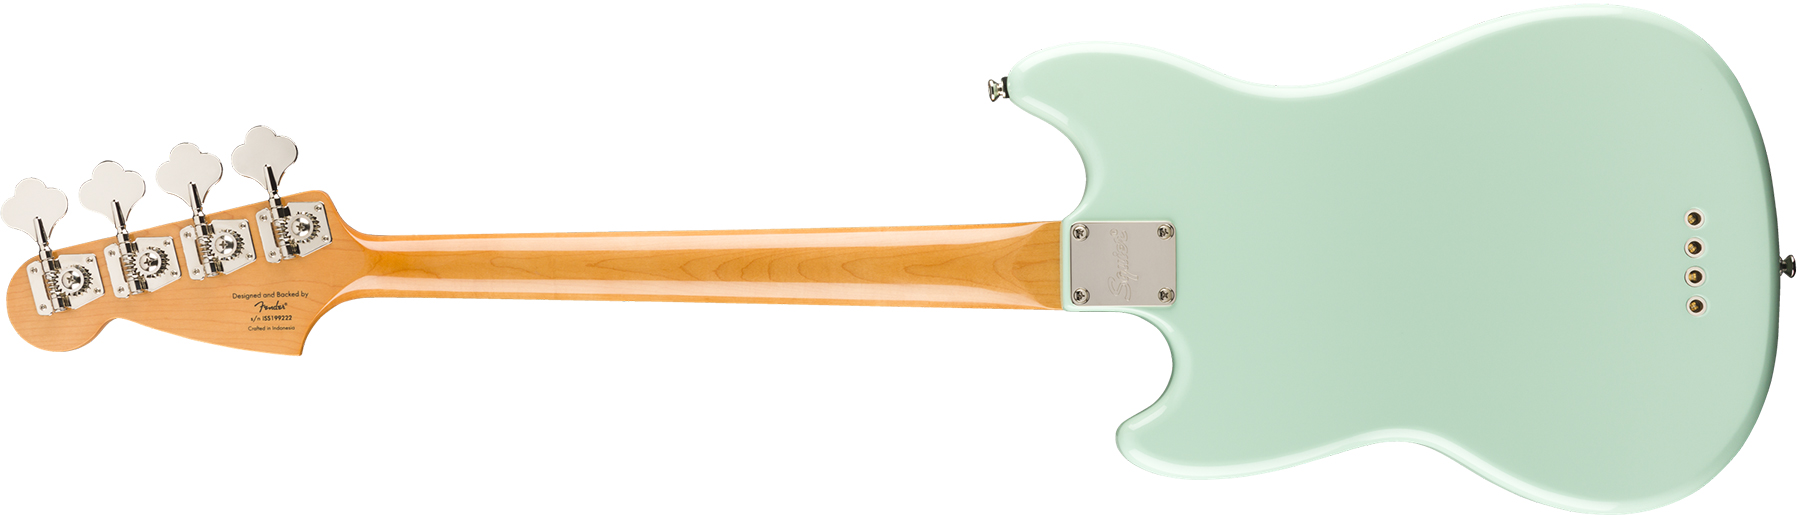 Squier Mustang Bass '60s Classic Vibe Lau 2019 - Seafoam Green - Bajo eléctrico de cuerpo sólido - Variation 1